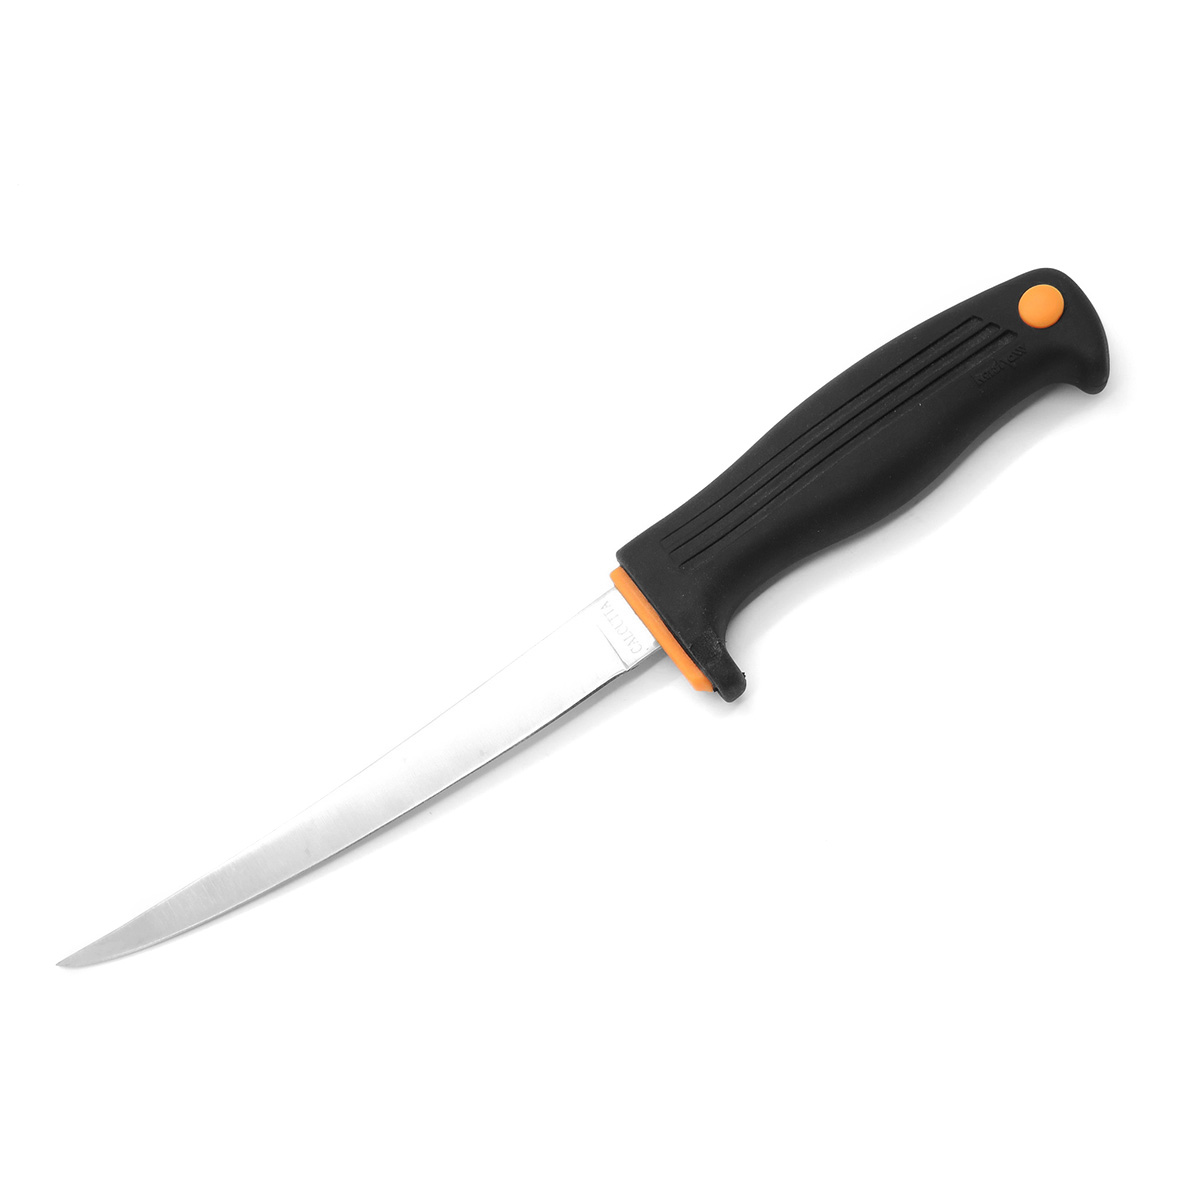 Нож филейный Kershaw Calcutta 6, сталь 420J2, рукоять пластик, черный - фото 2